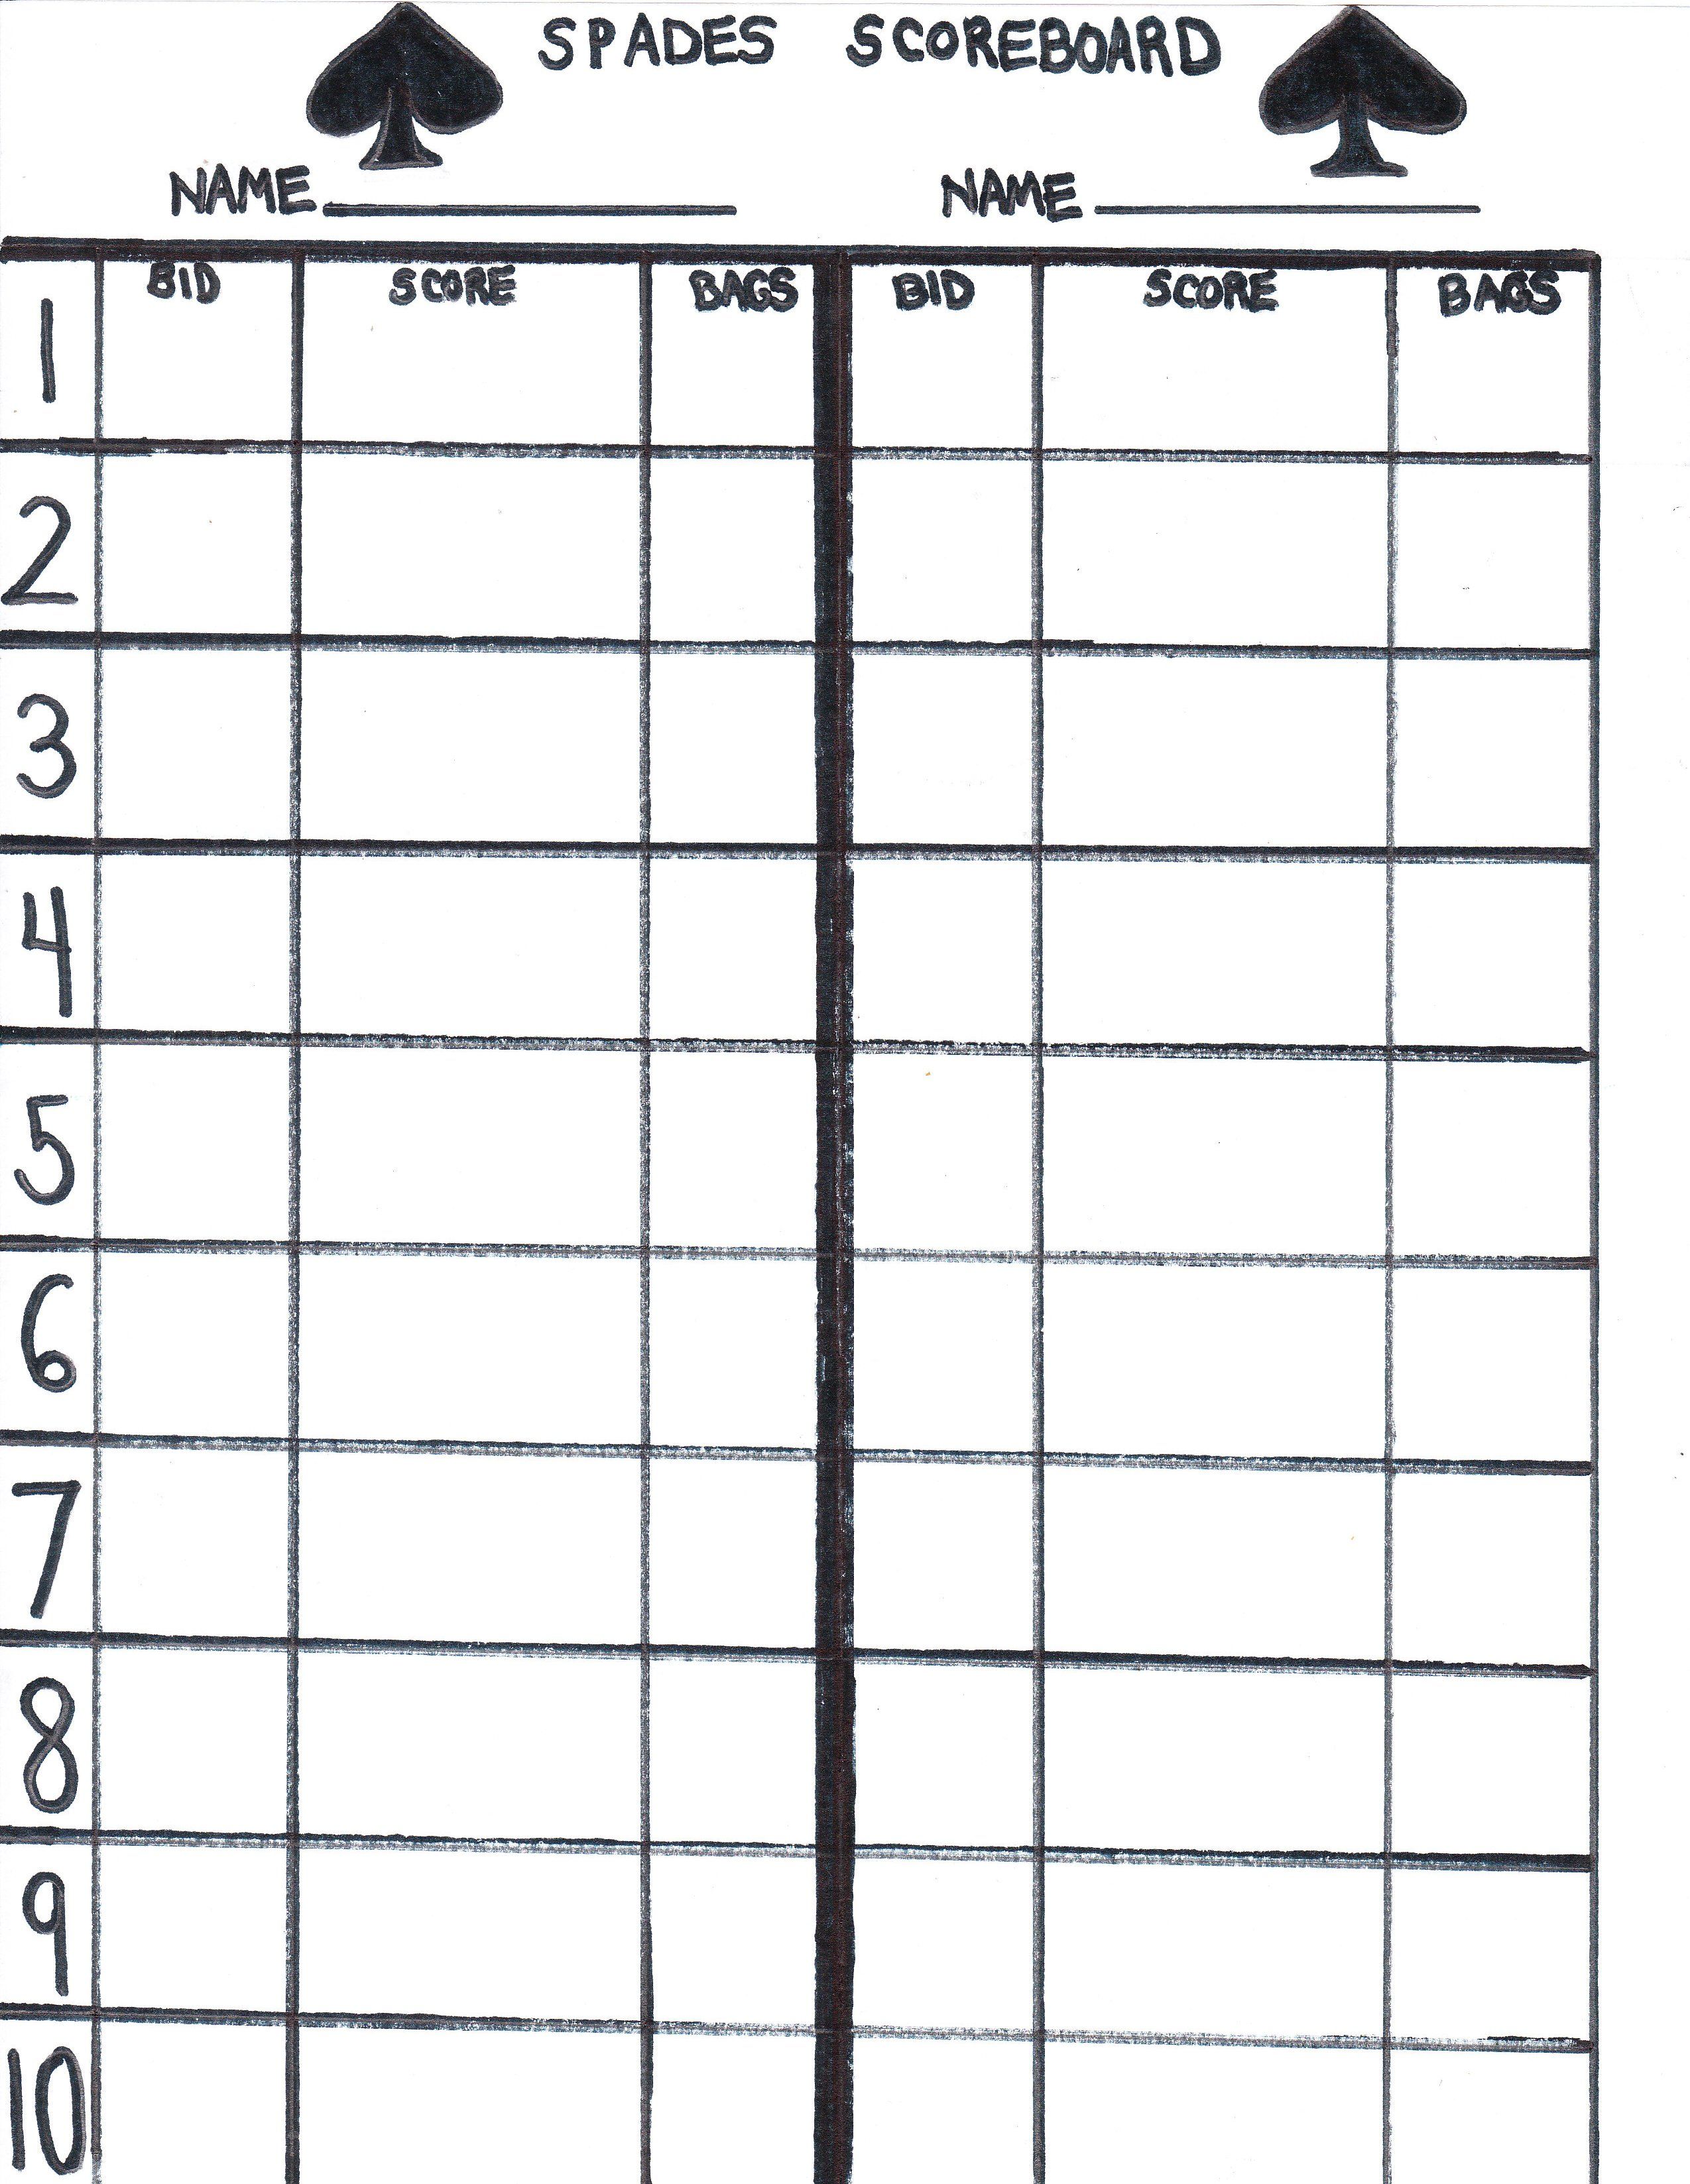 An example of a blank Spades Scoresheet